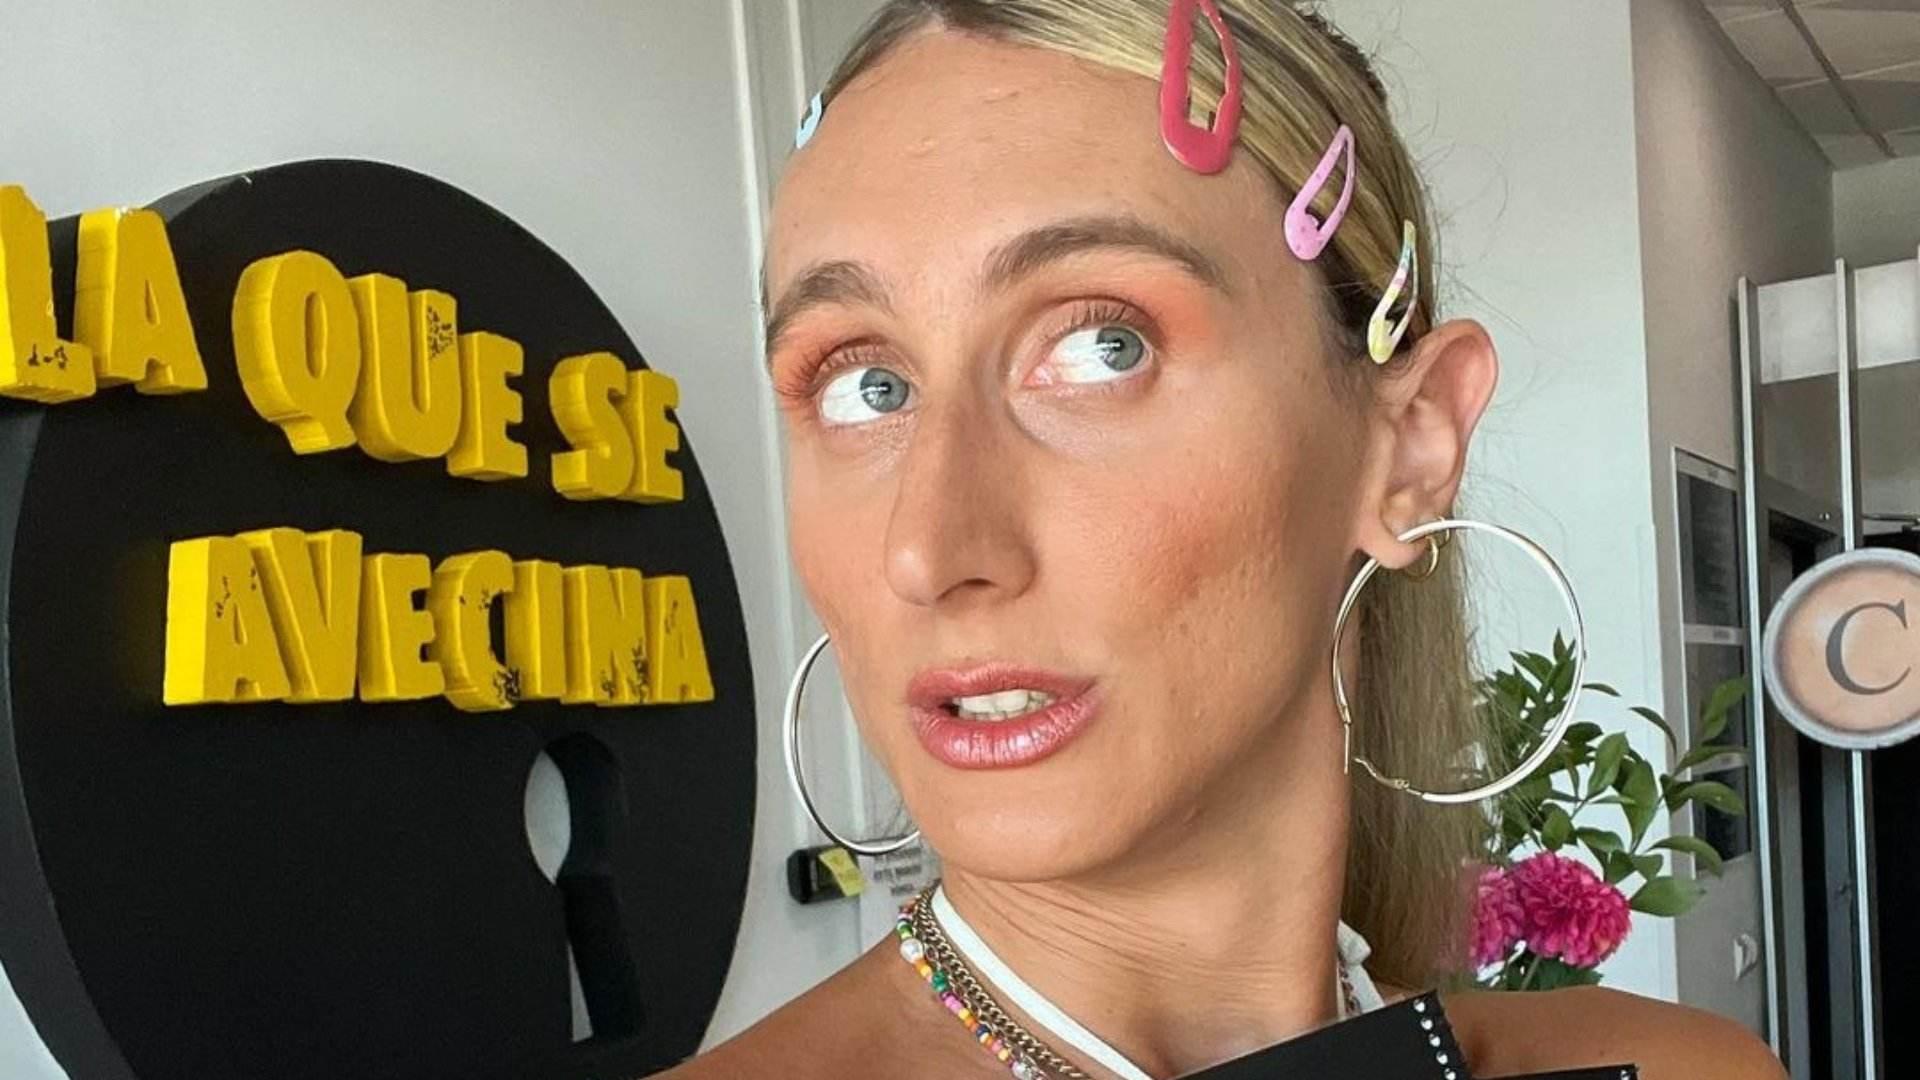 Transfobia en Telecinco: tratan en masculino a una actriz y ella estalla, "vomitivo"